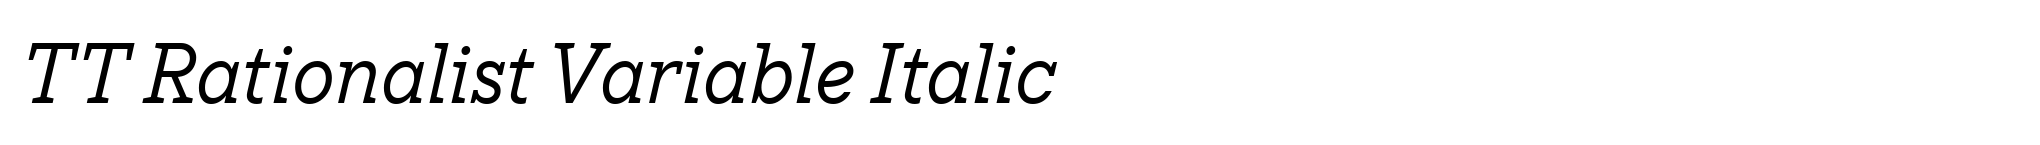 TT Rationalist Variable Italic image